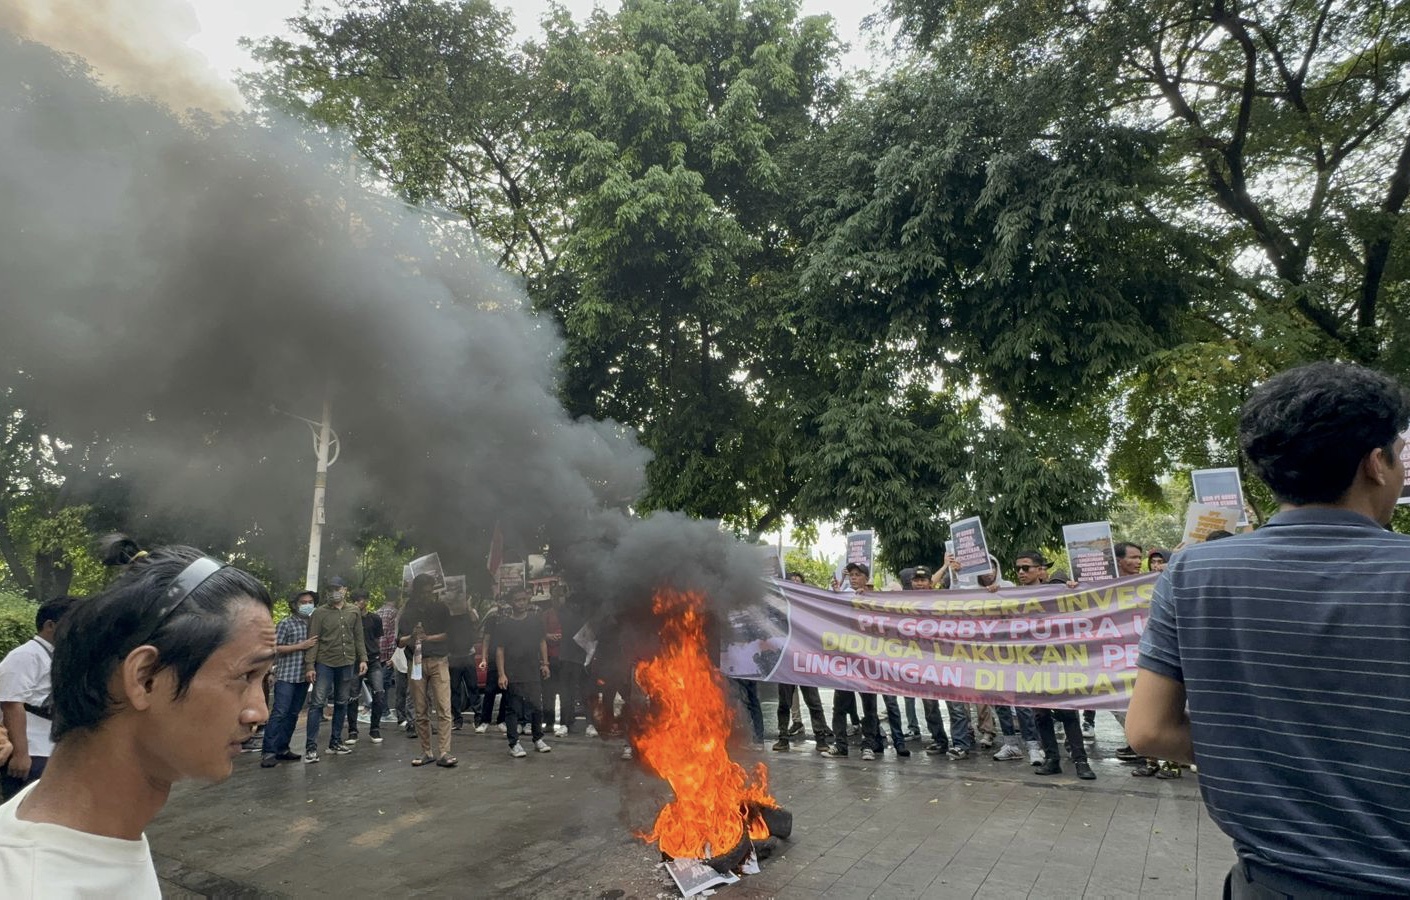 Aksi demonstrasi penolakan aktivitas tambang di Musi Rawas Utara di depan Gedung Kementerian LHK. Istimewa